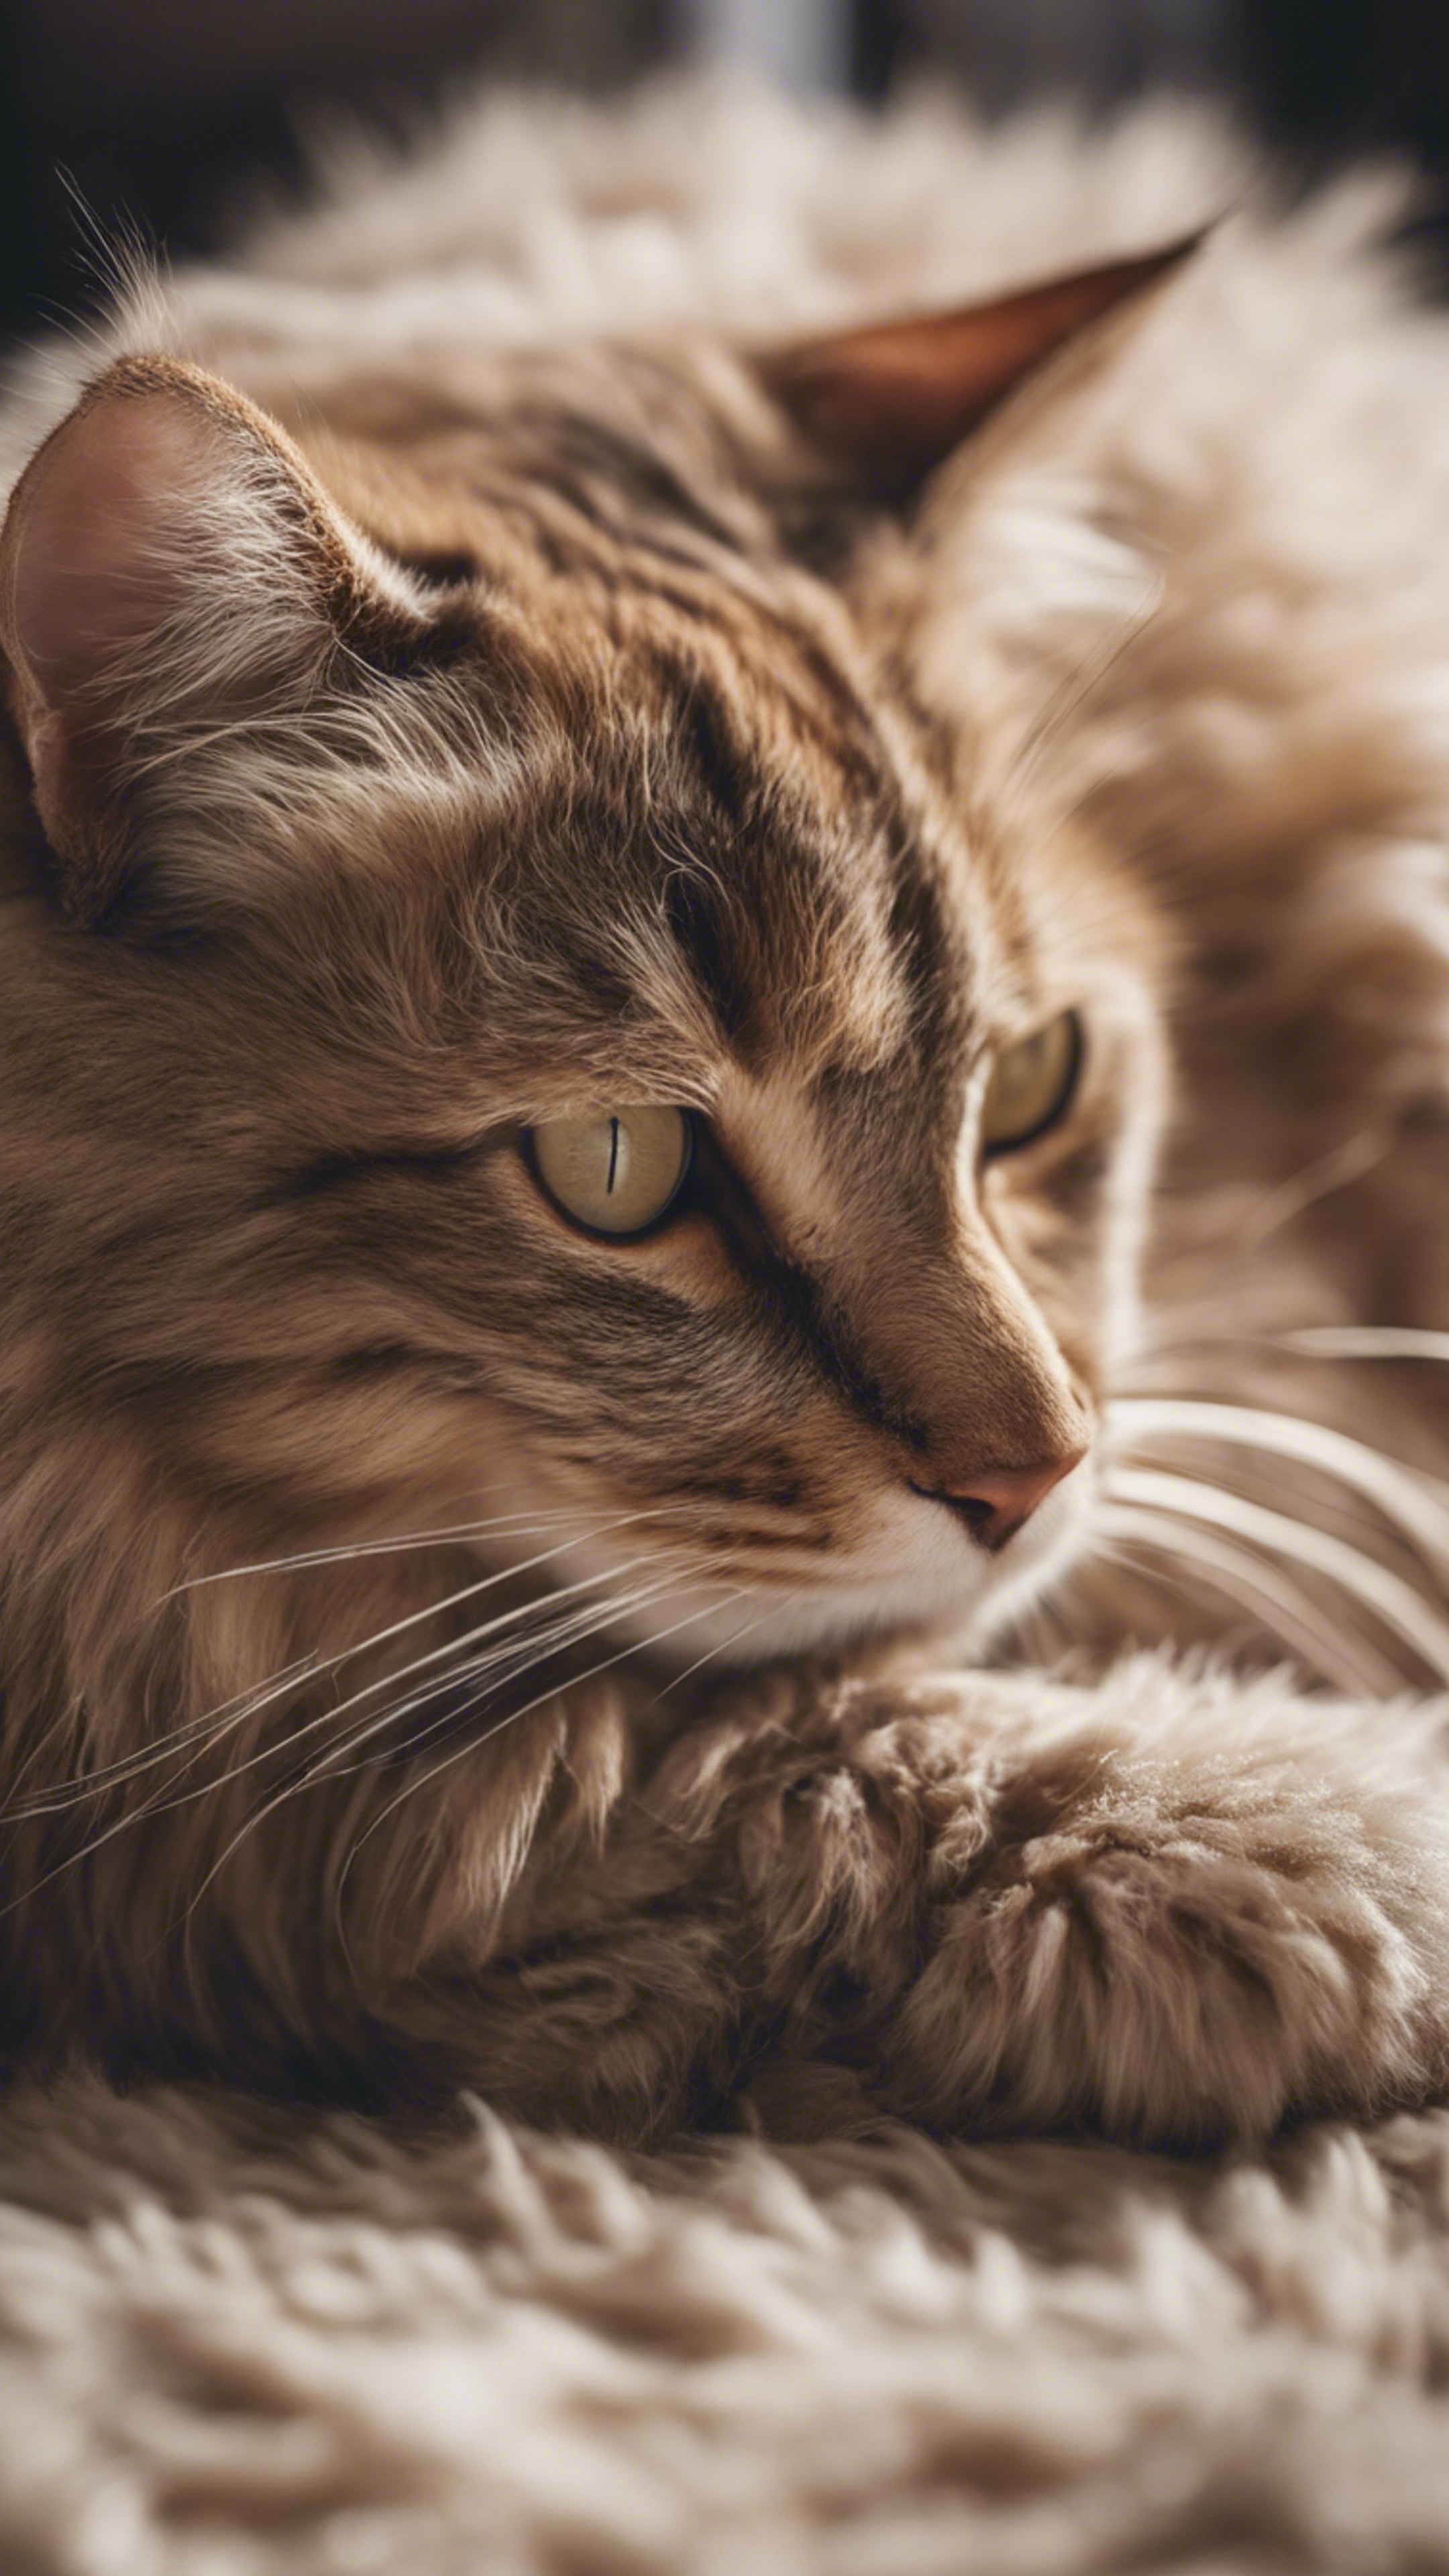 A lazing cat with cool beige fur, curling up on a shaggy rug. Fondo de pantalla[5dc2da6099d74770bd36]